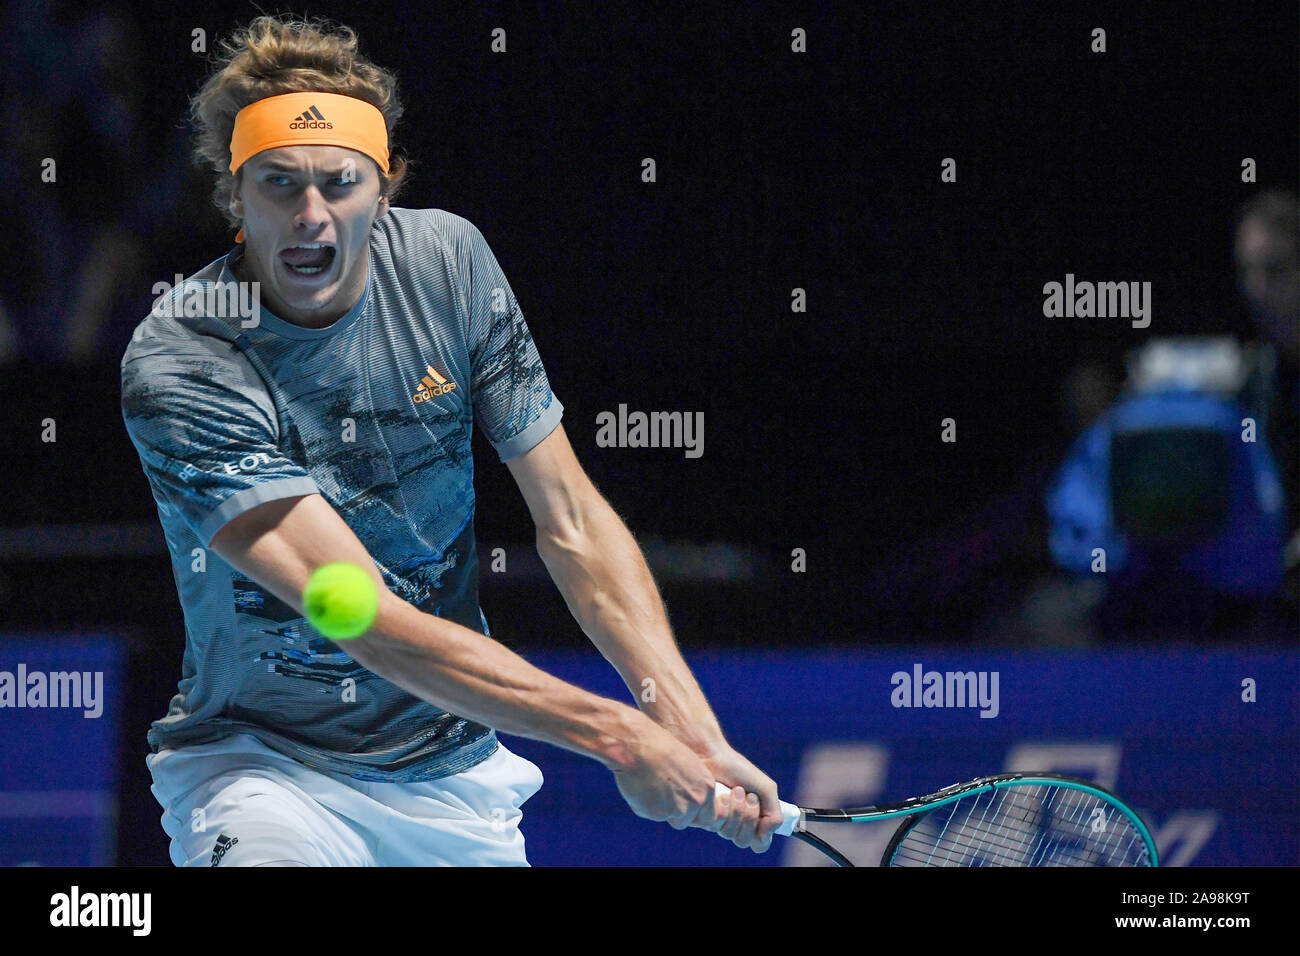 Londres, Royaume-Uni, 13 Nov 2019, Alexander zverev, ger, lors de l'ATP Nitto STEFANOS TSITSIPAS Final Vs ALEXANDER ZVEREV - Internationaux de Tennis - Crédit : LPS/Roberto Zanettin/Alamy Live News Banque D'Images